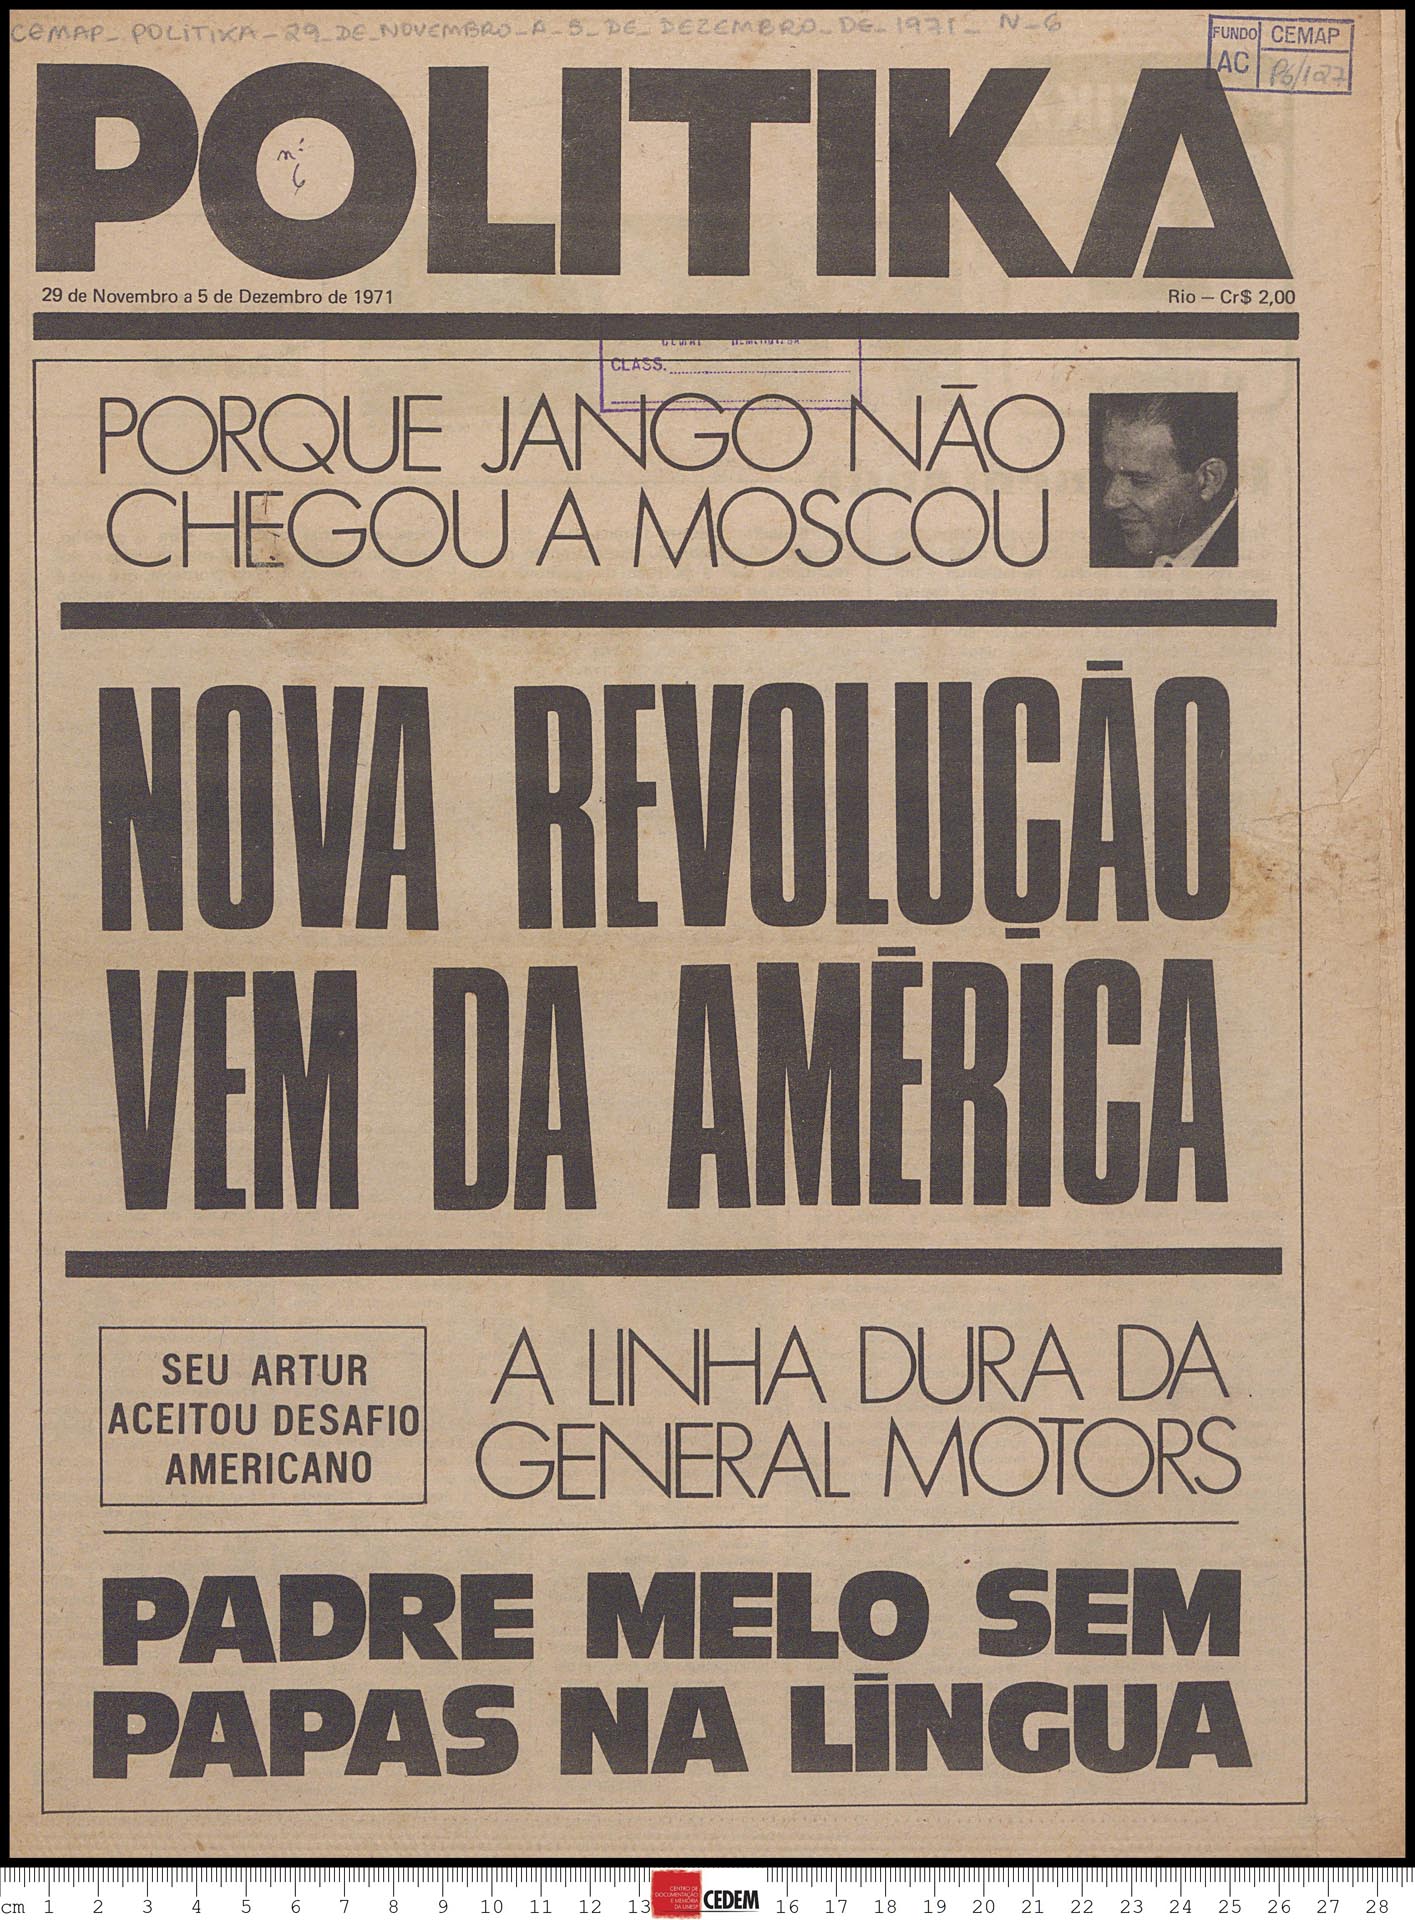 Politika - 6 - 29 de nov. a 5 de dez. 1971